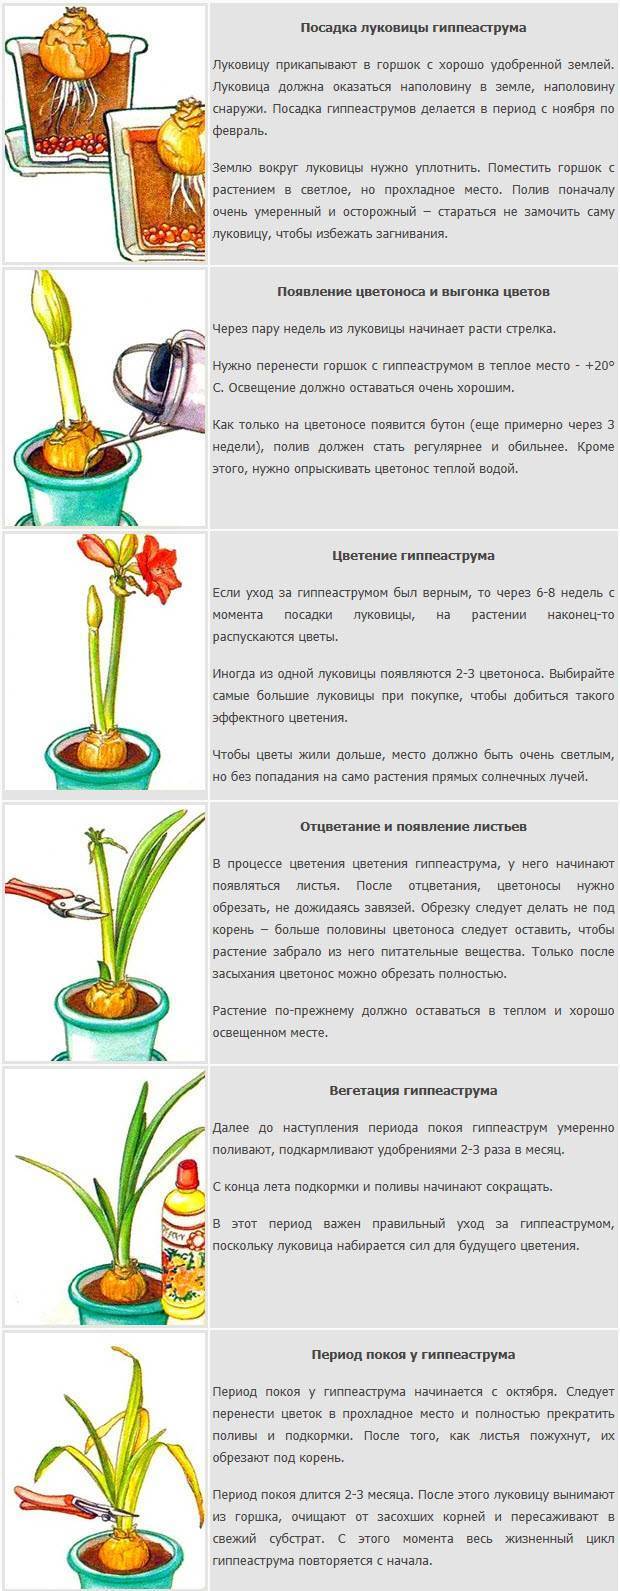 Гиппеаструм - уход в домашних условиях и подготовка к цветению, сорта и фото